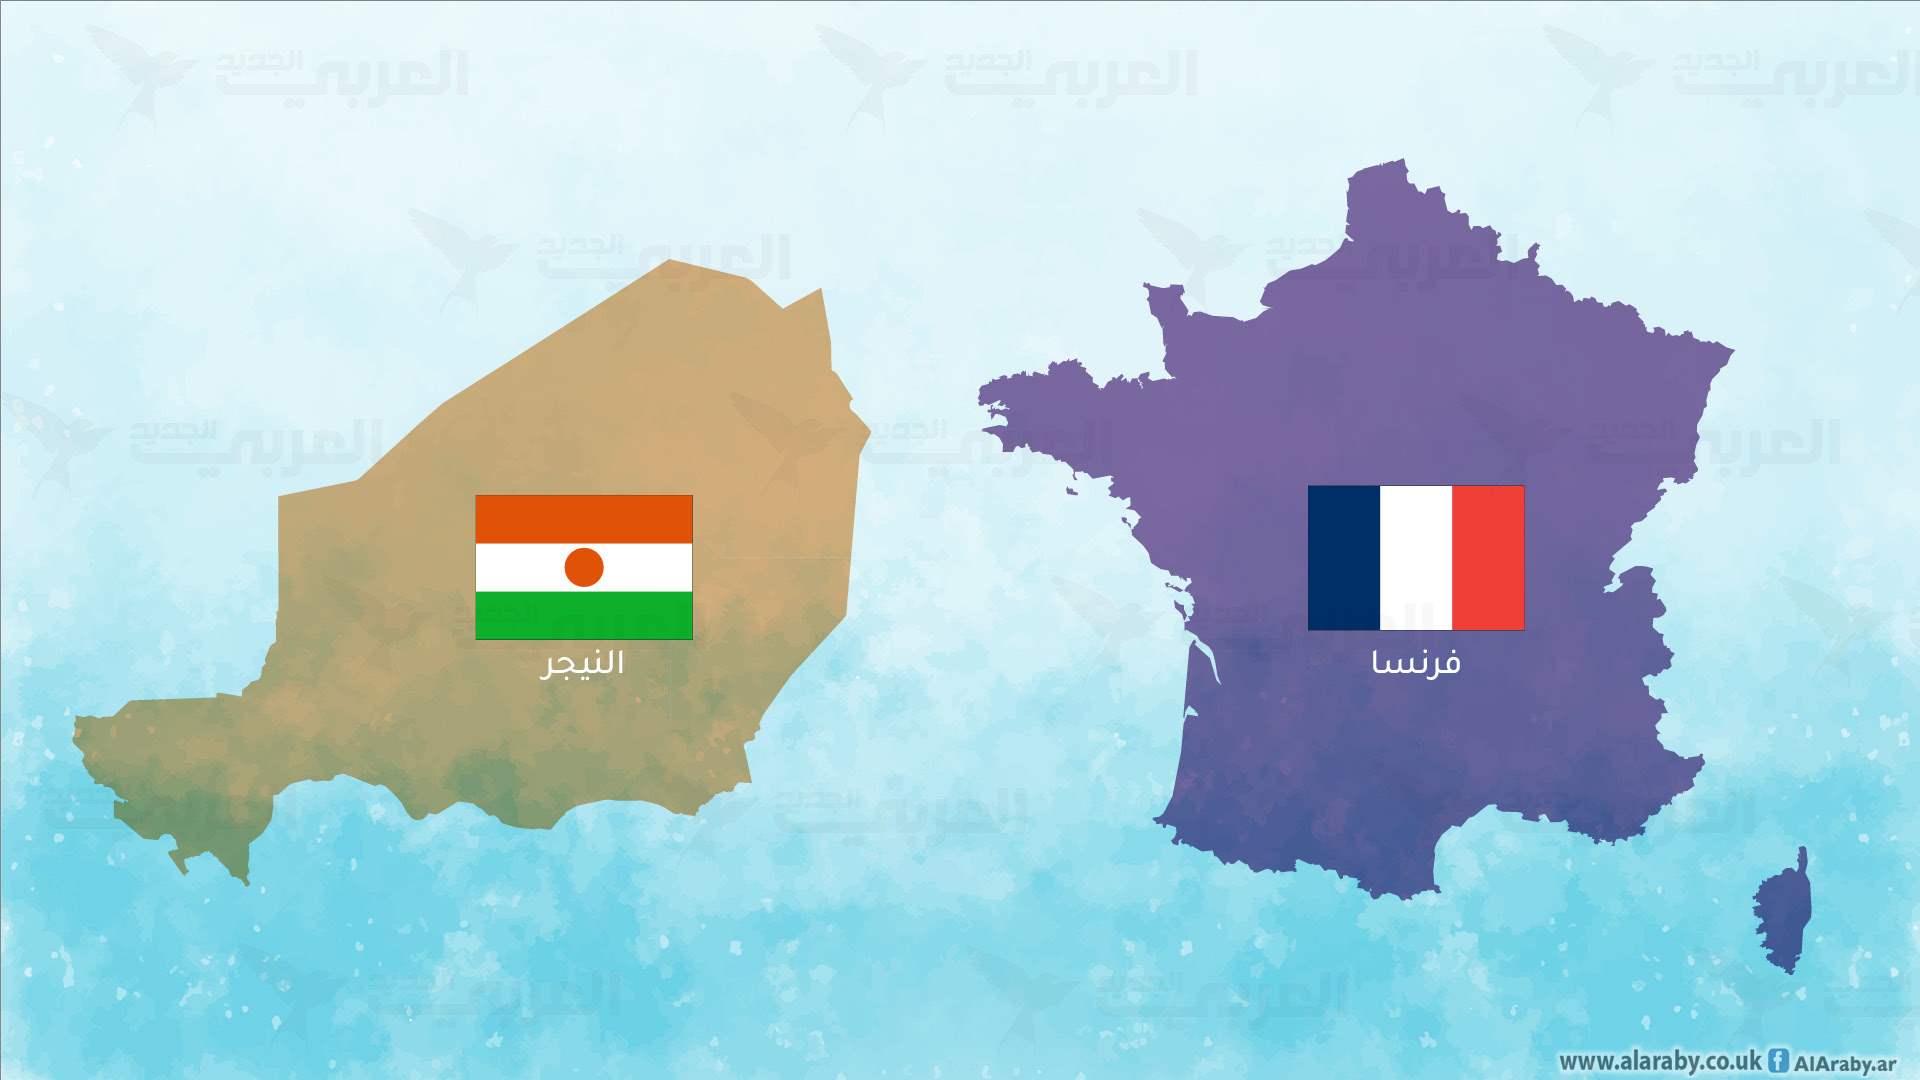 النظام العسكري في النيجر يتهم فرنسا بـ&quot;نشر قواتها&quot; استعدادا لـ&quot;تدخل عسكري&quot;